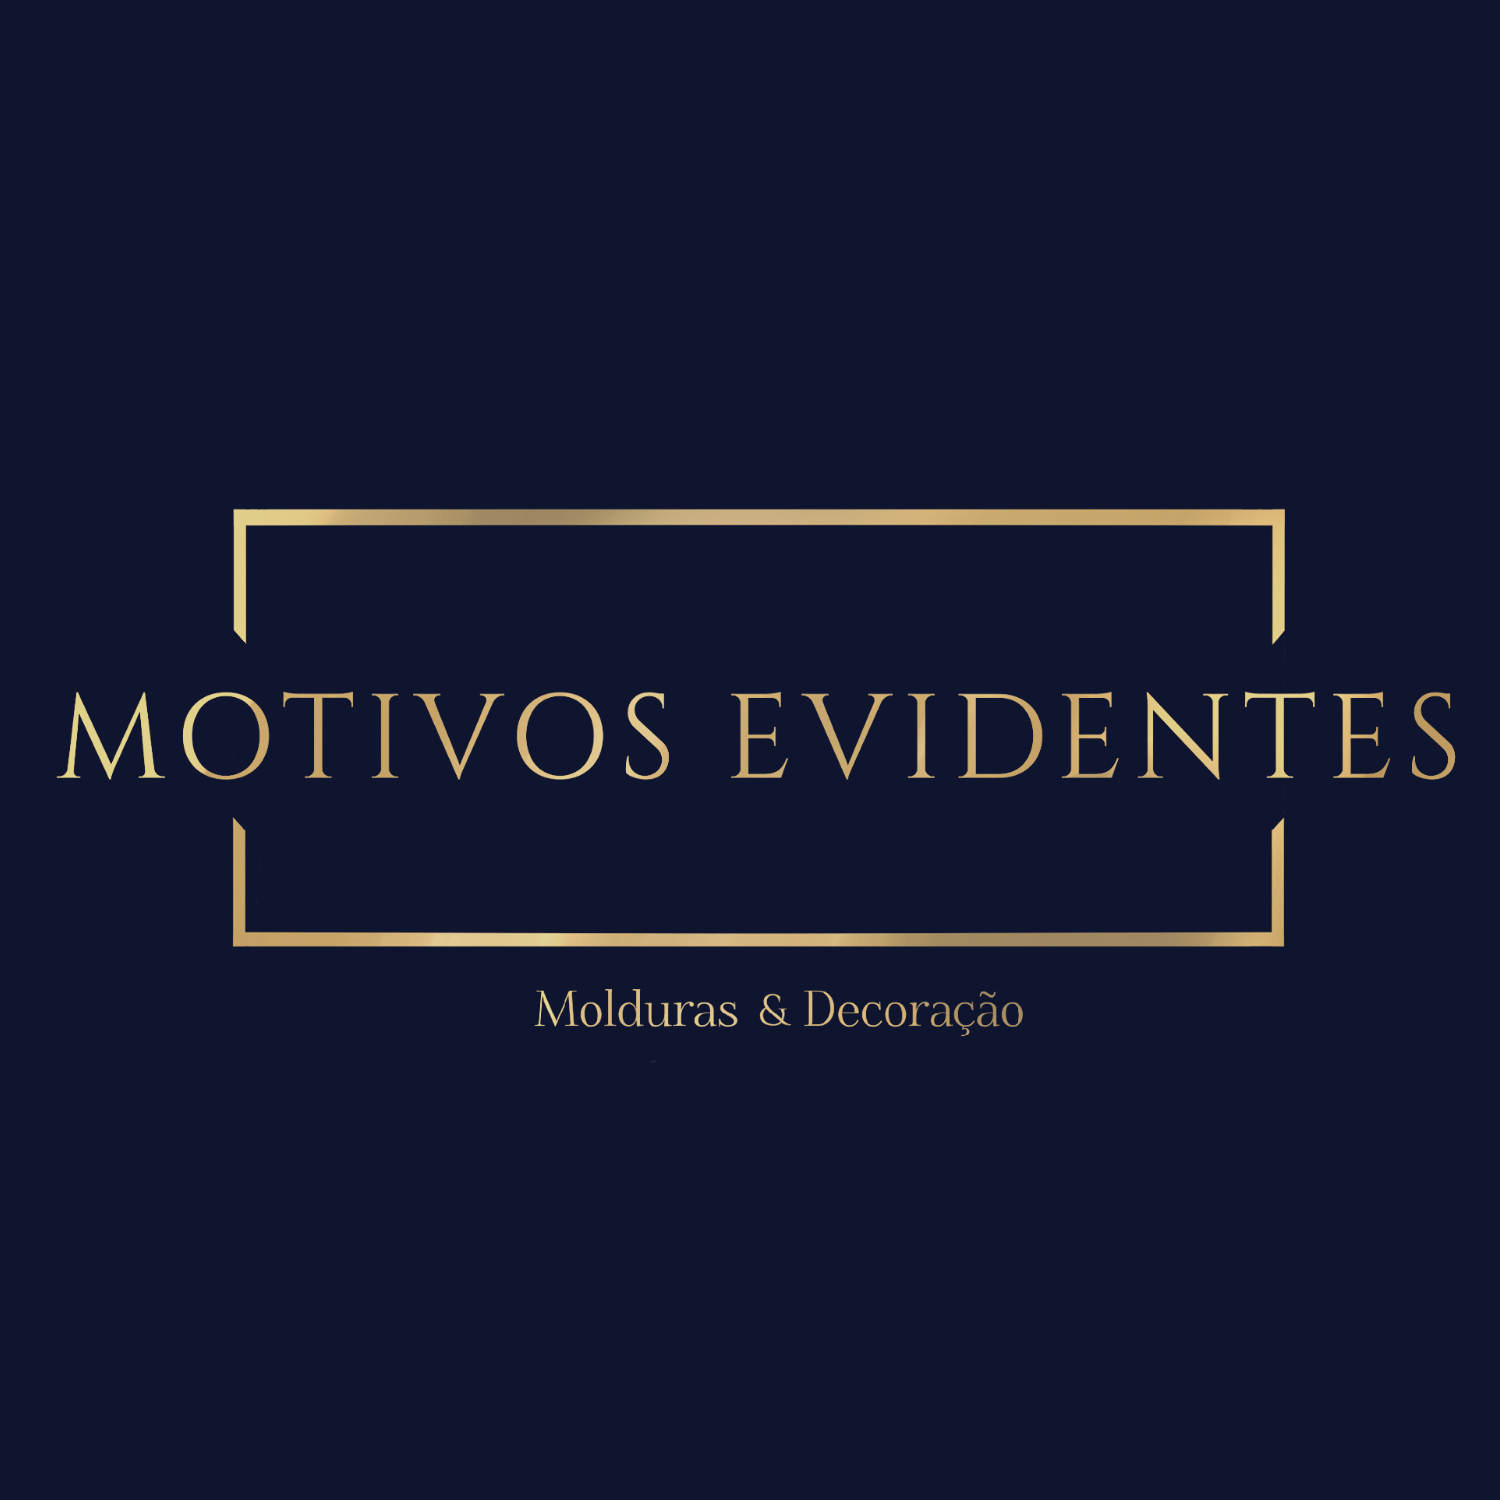 Motivos Evidentes - Molduras & Decoração